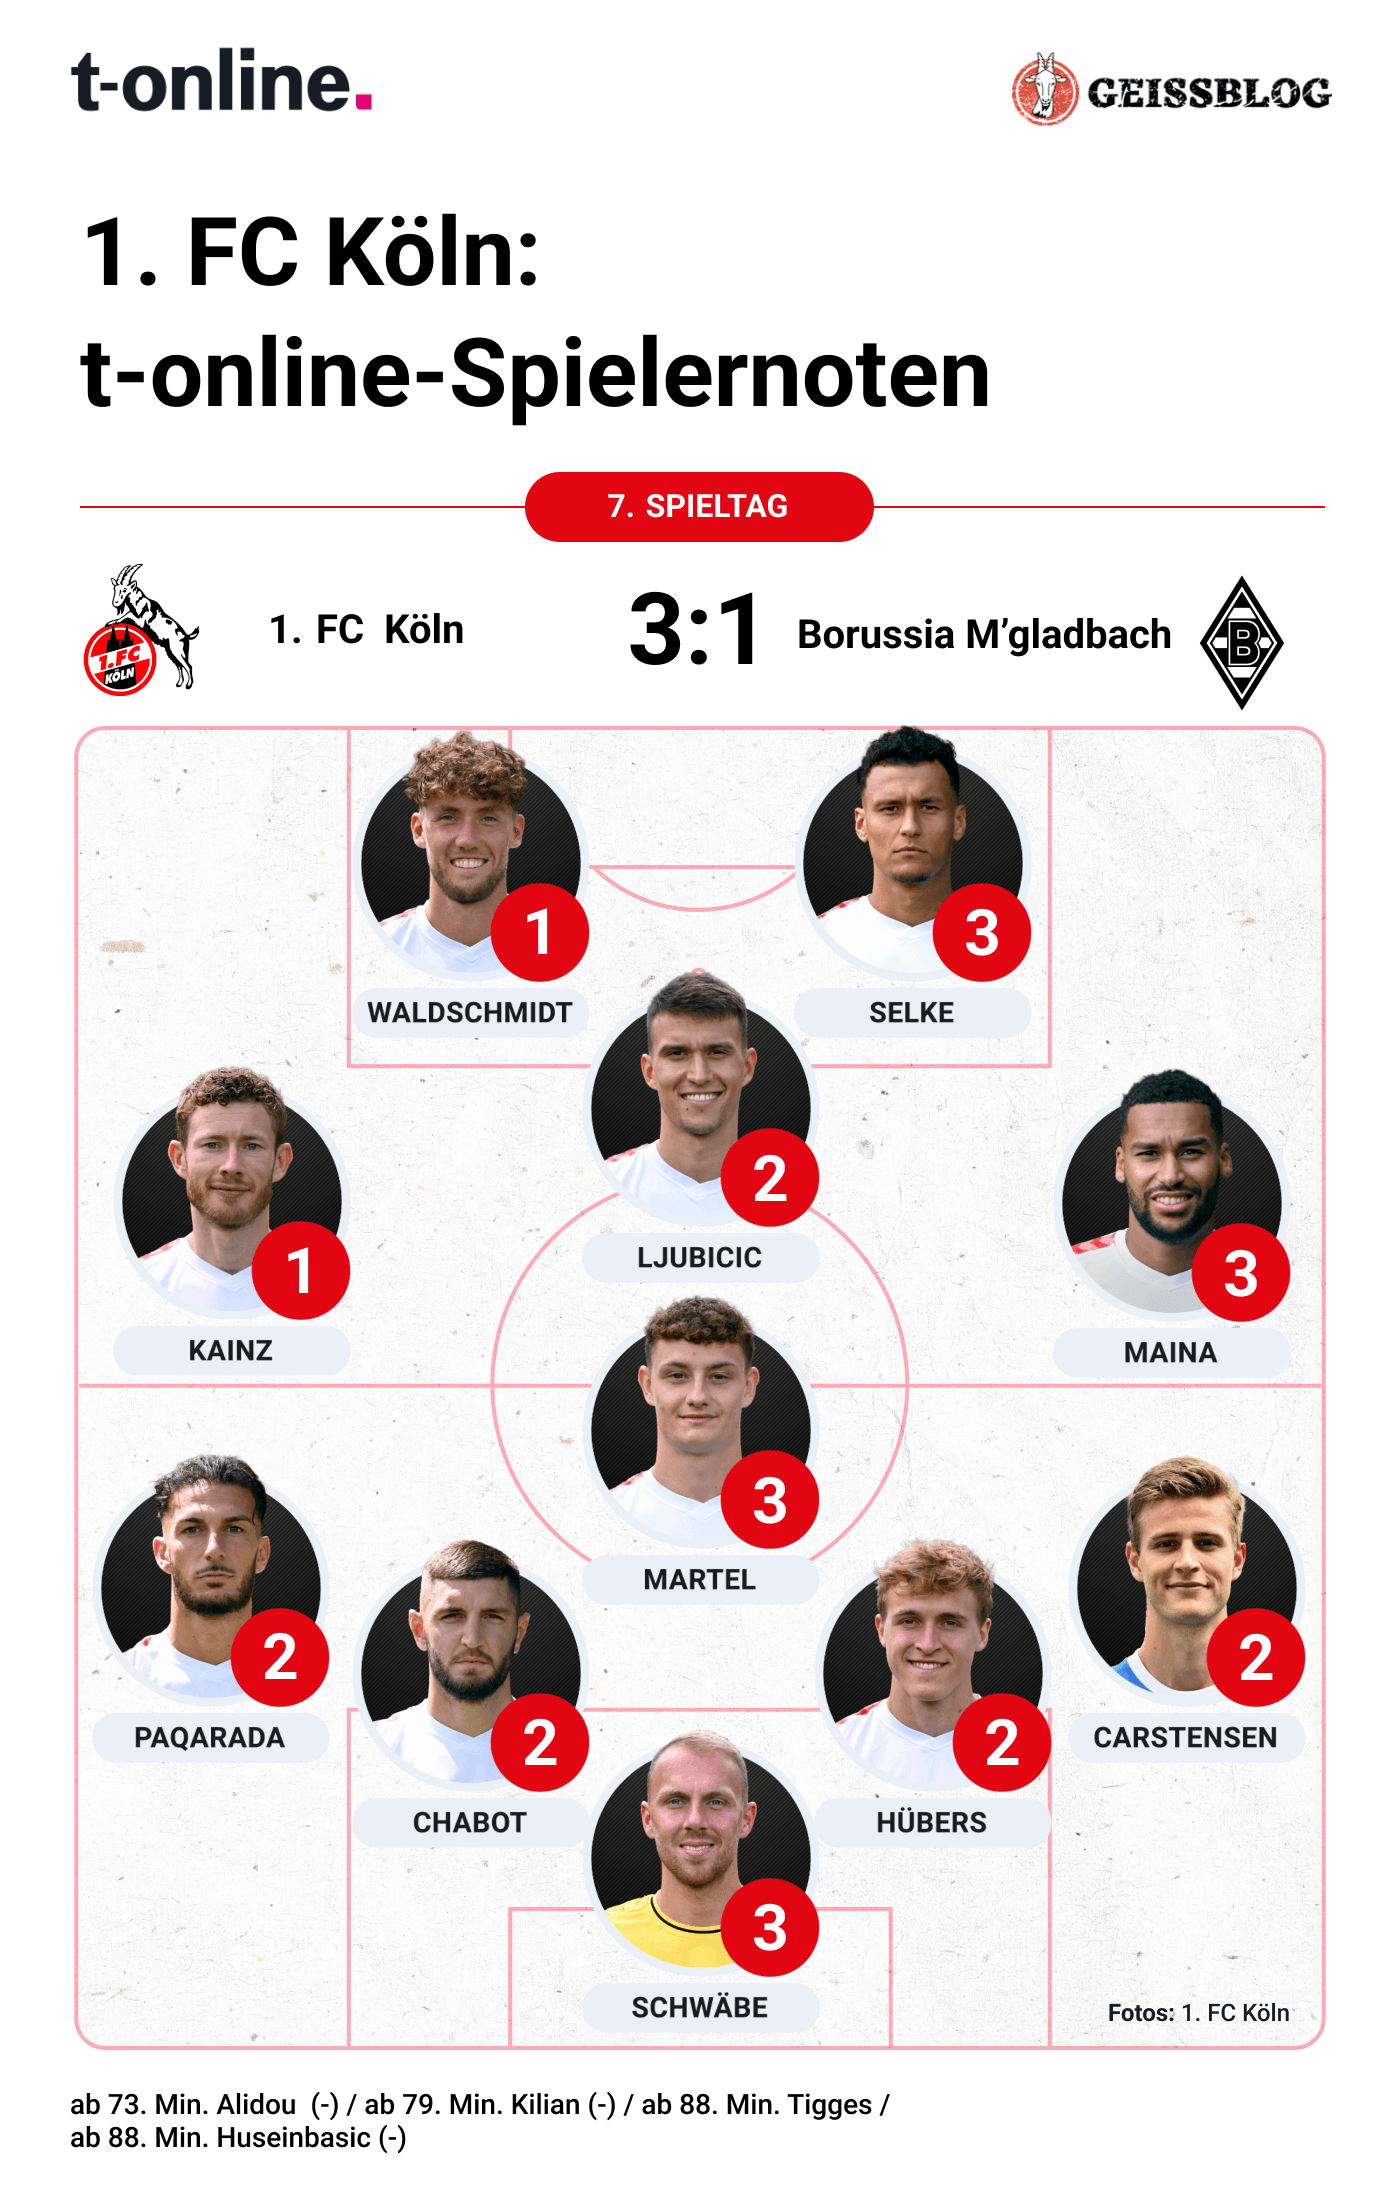 Die Noten des 1. FC Köln gegen Borussia Mönchengladbach. (Quelle: t-online)